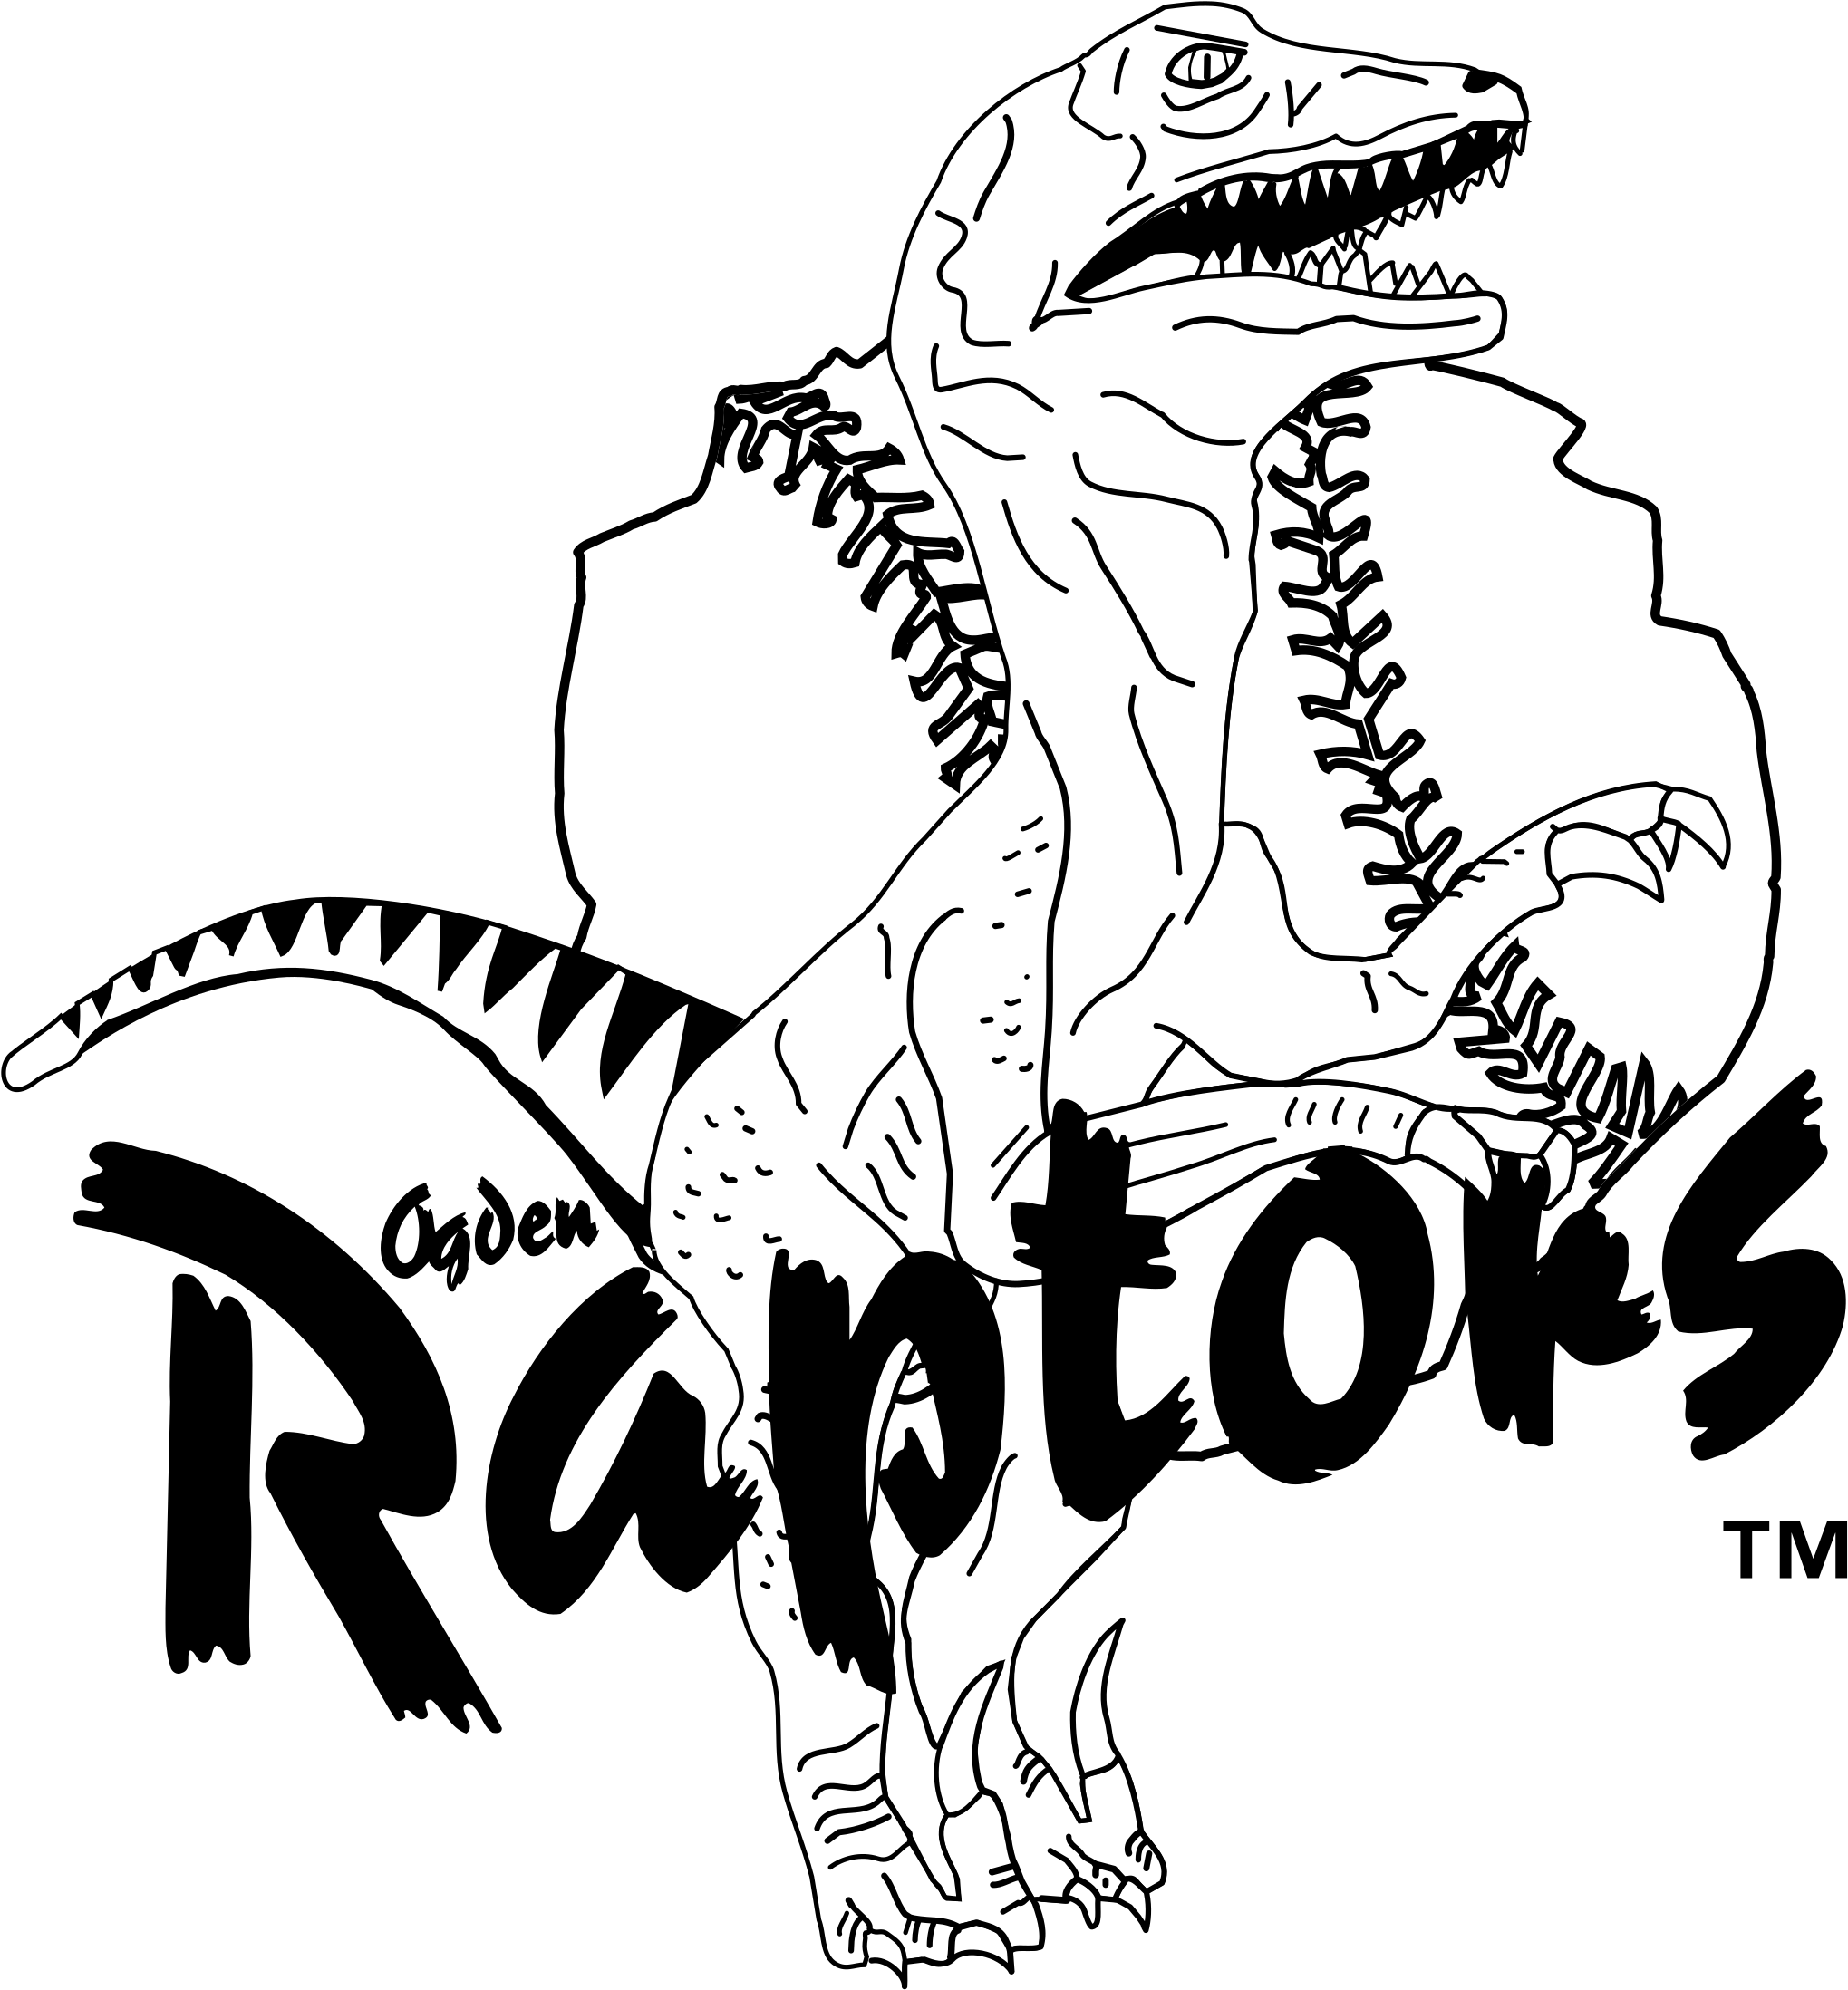 Download PNG image - Ogden Raptors PNG File 